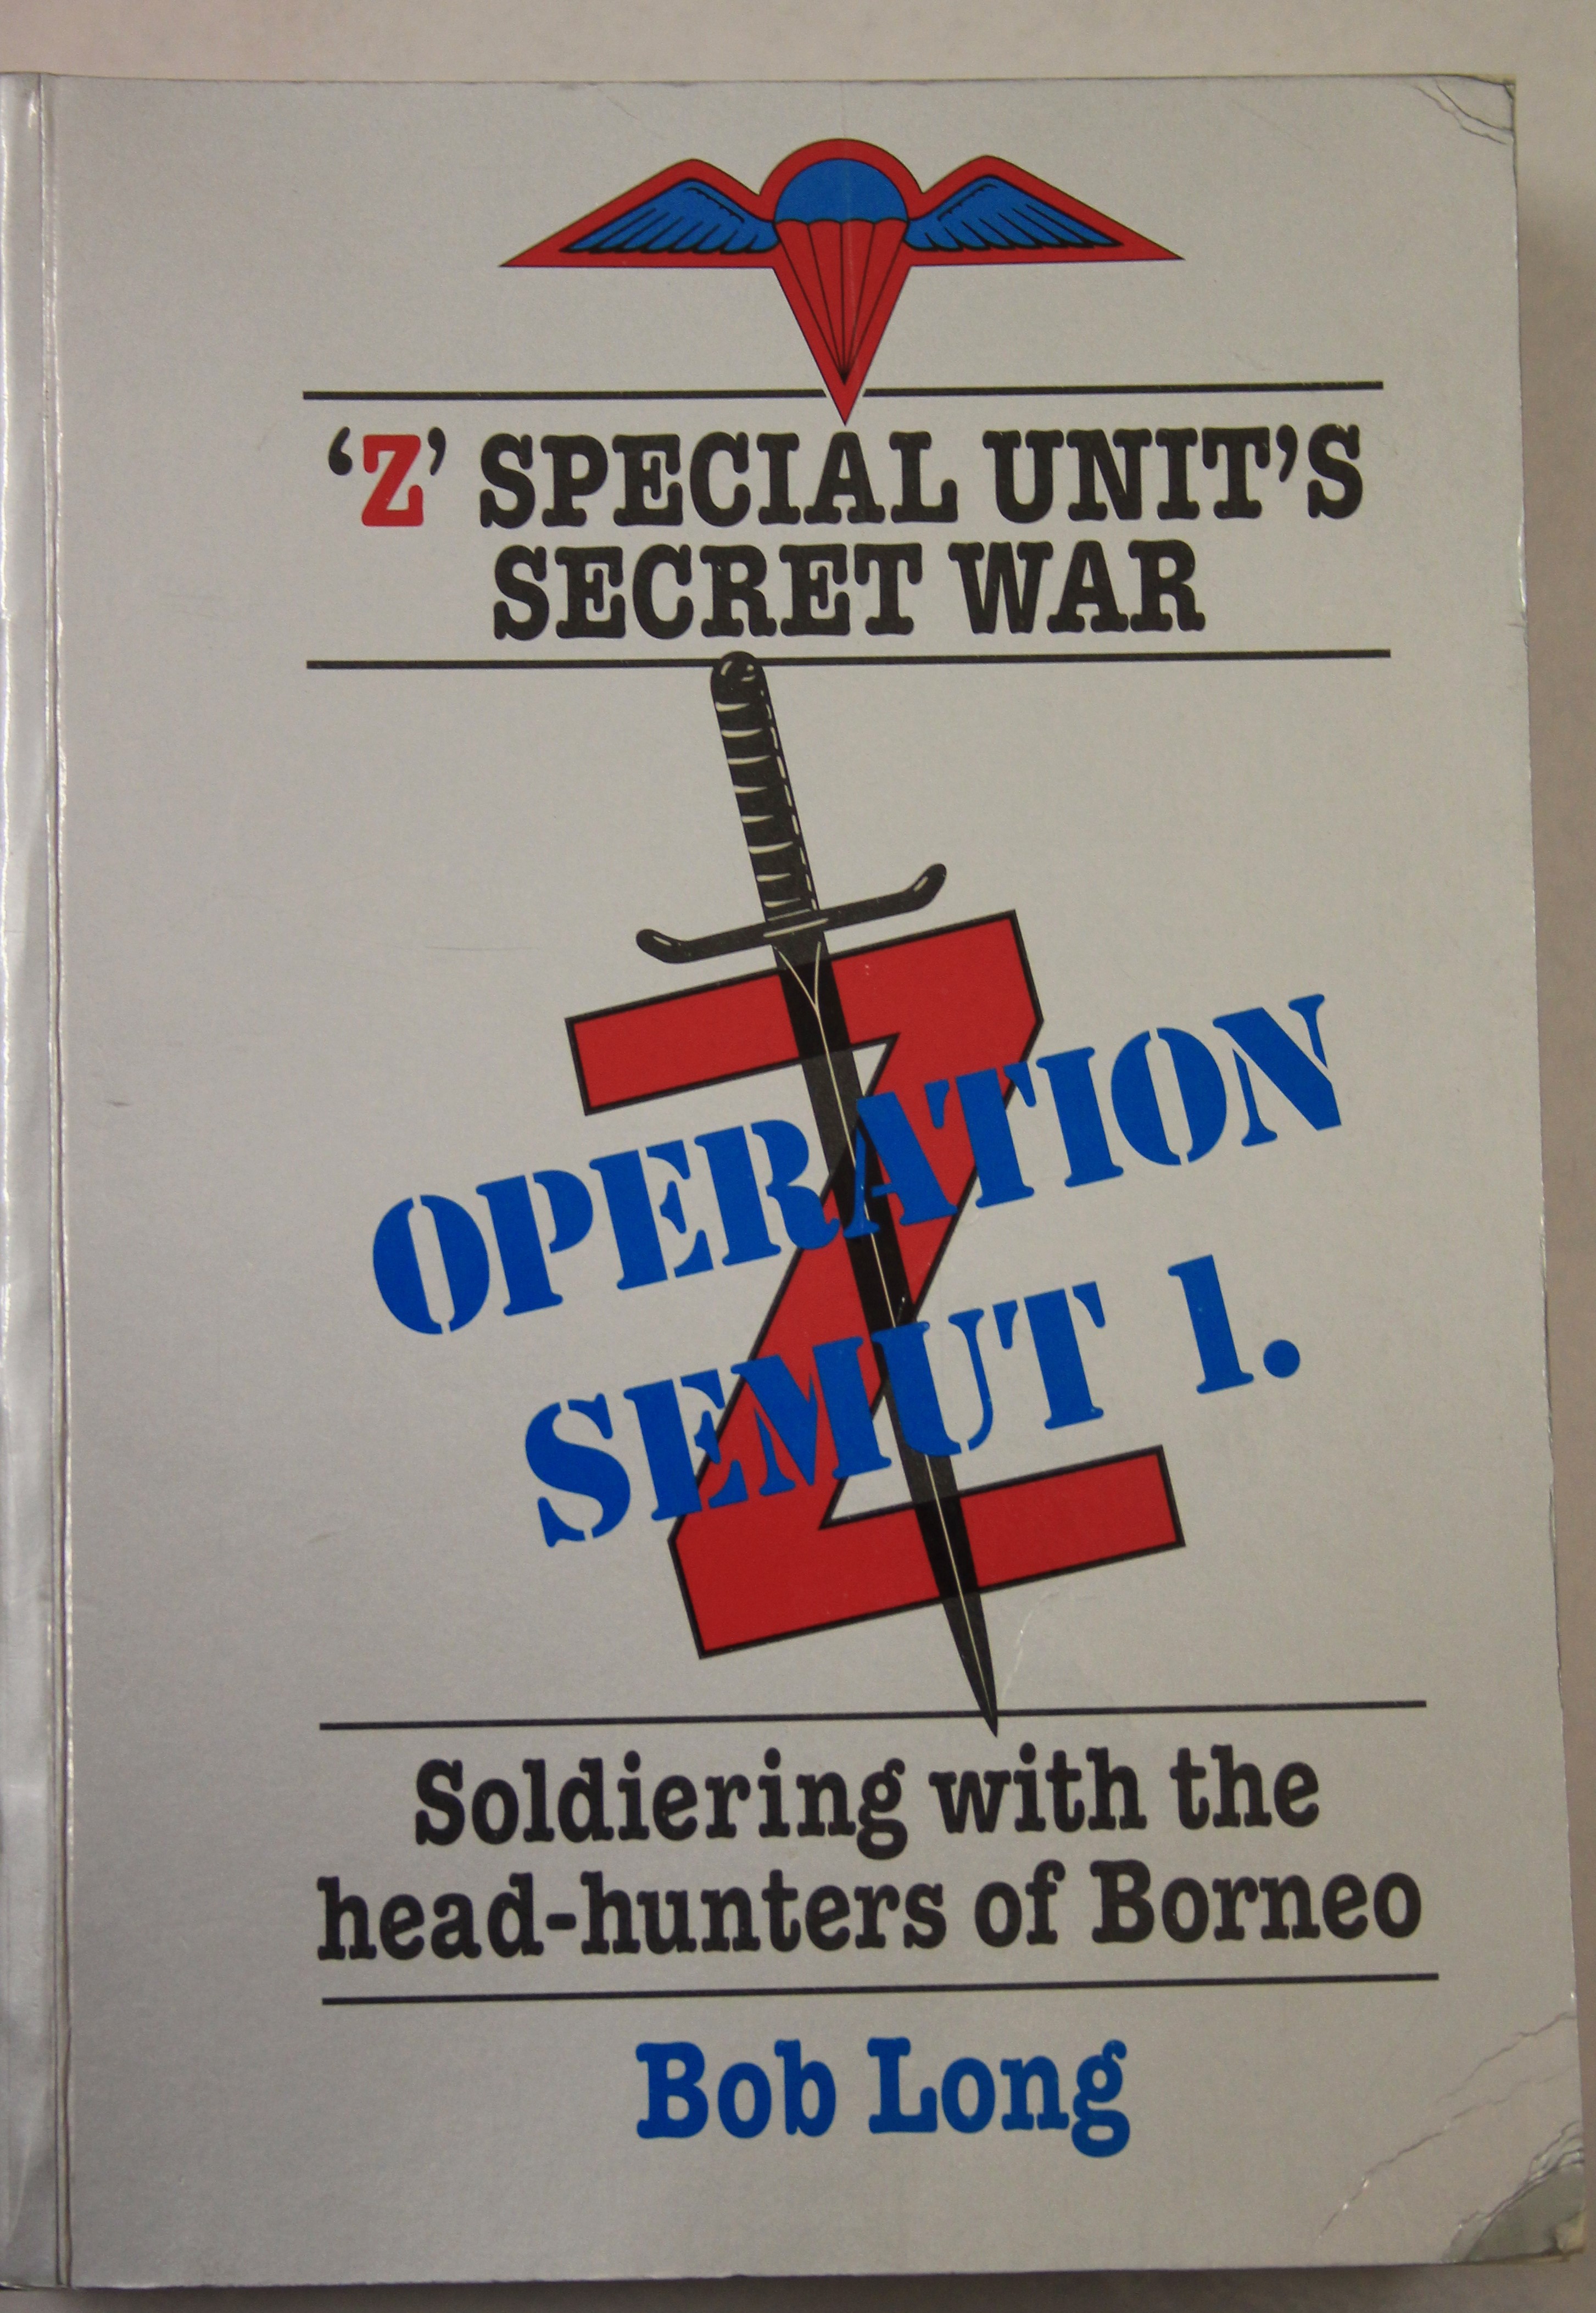 'Z' Unit's Secret War